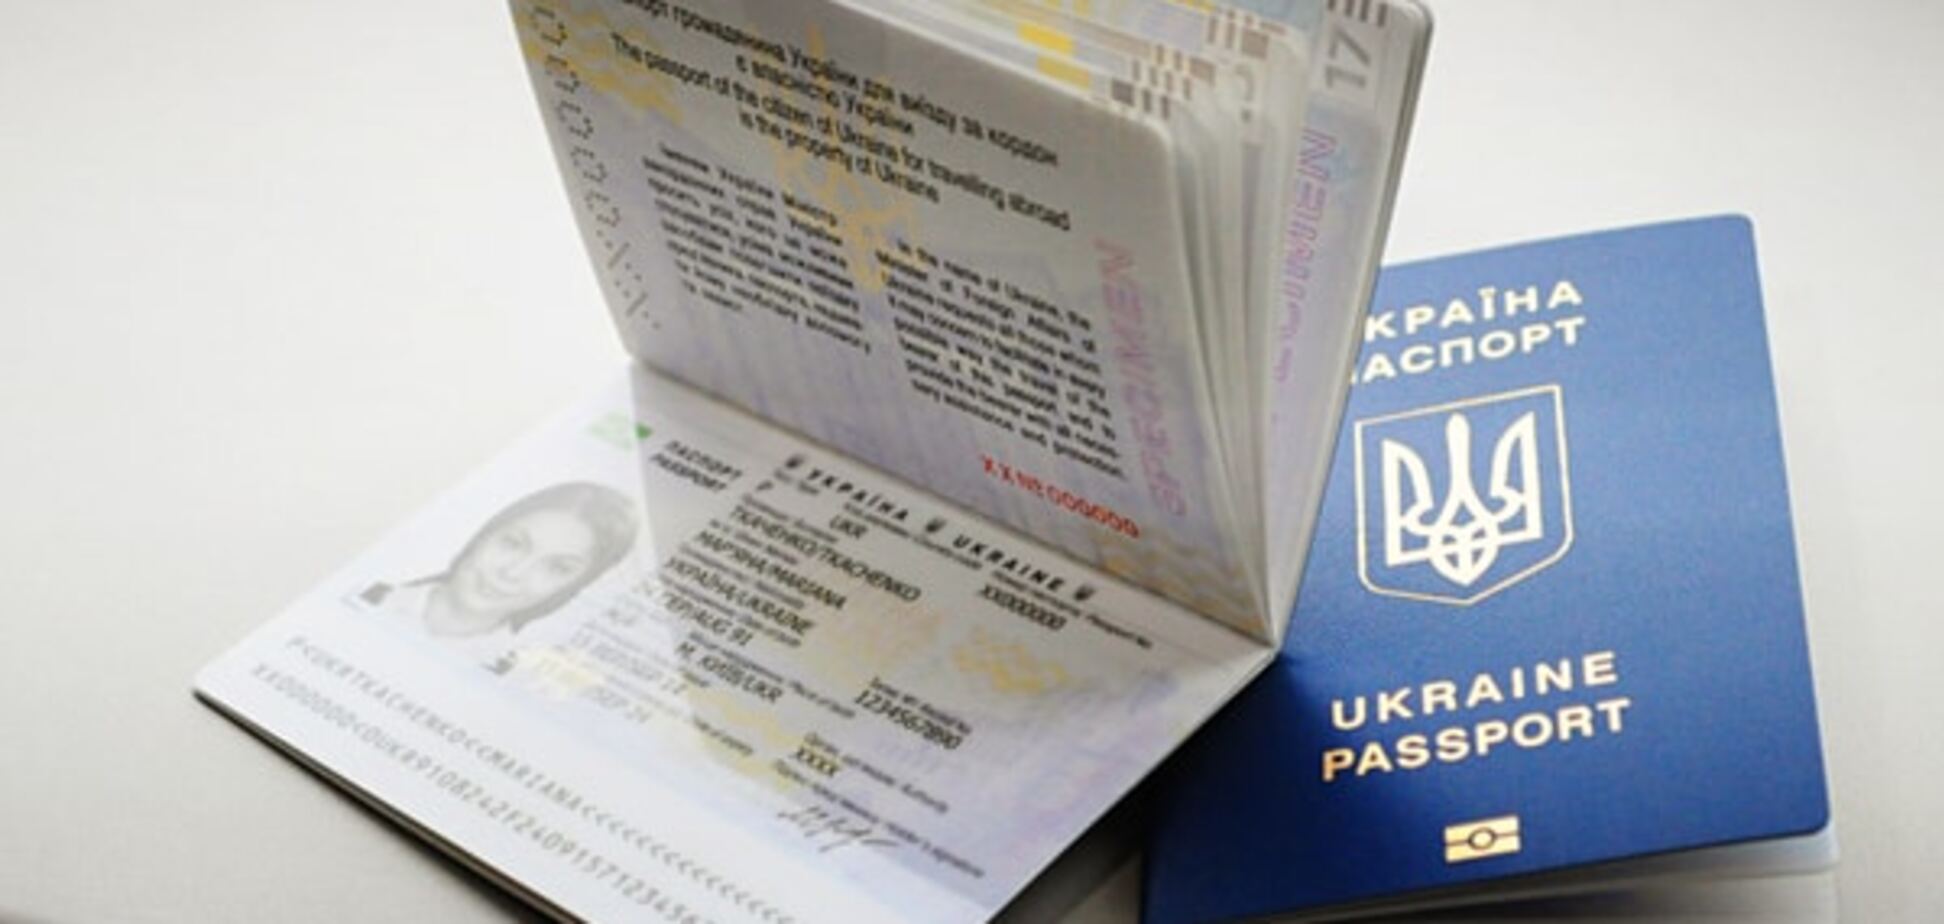 Оформлення закордонного паспорта в Україні тепер можна відстежити в онлайн-режимі